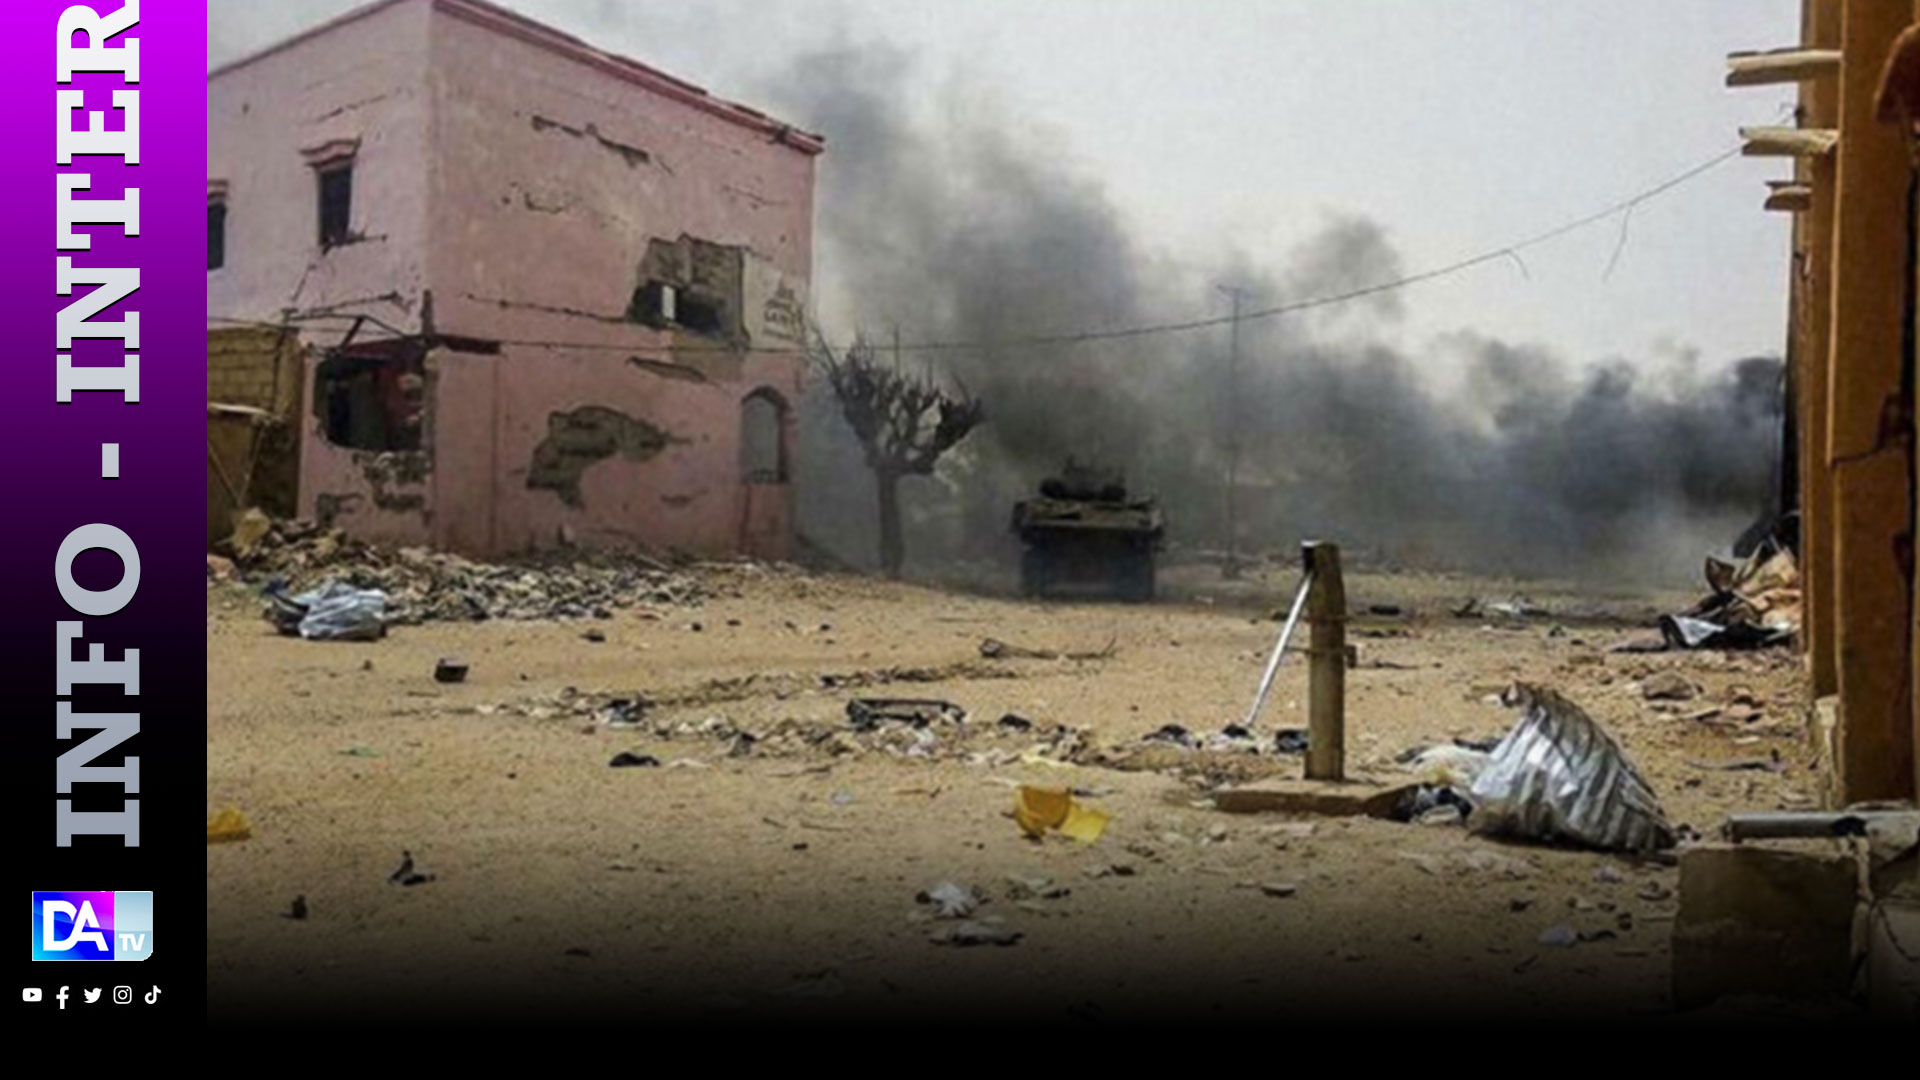 Mali: attaque suicide contre un camp militaire à Gao, pas encore de bilan (armée)